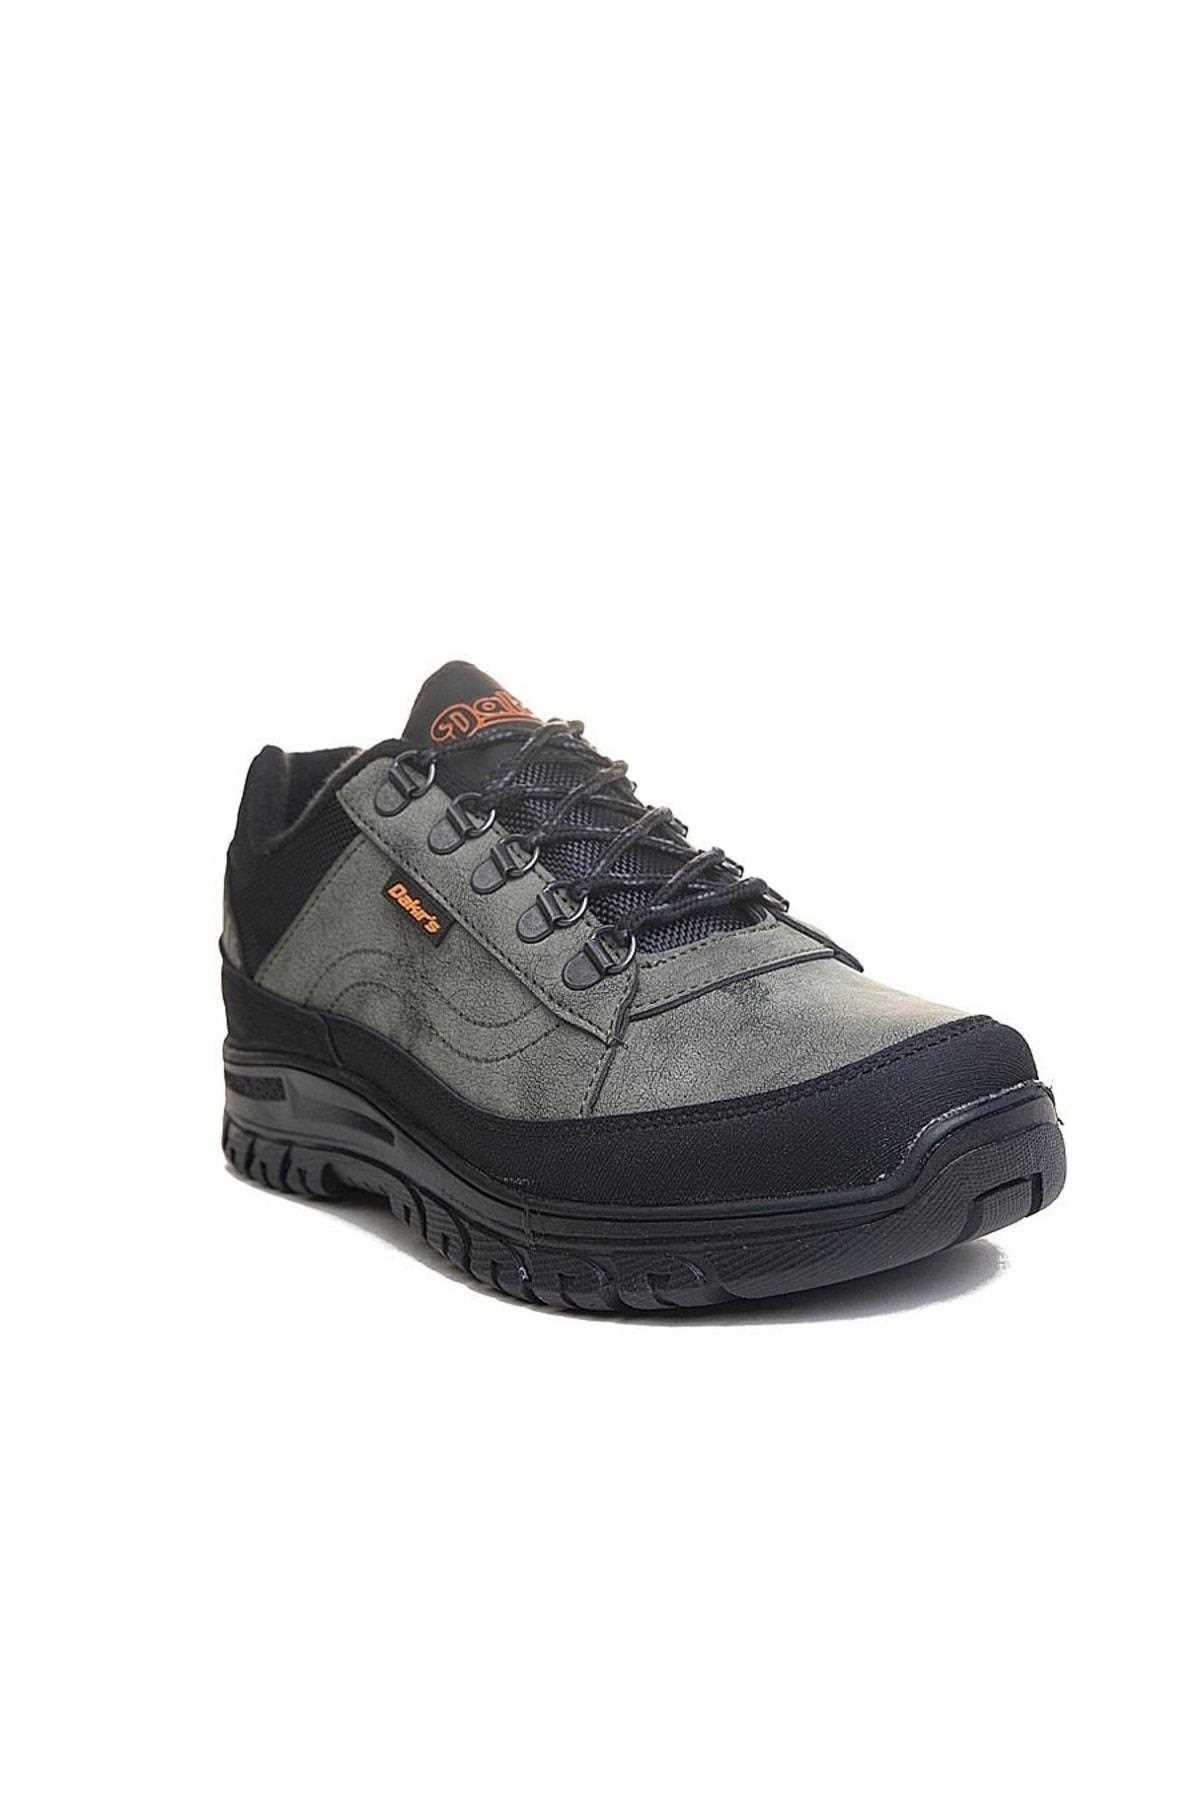 فروش کفش کوهنوردی مقاوم در برابر آب شیک AlbiShoes Hakiiiiii trekkkk ty335696720